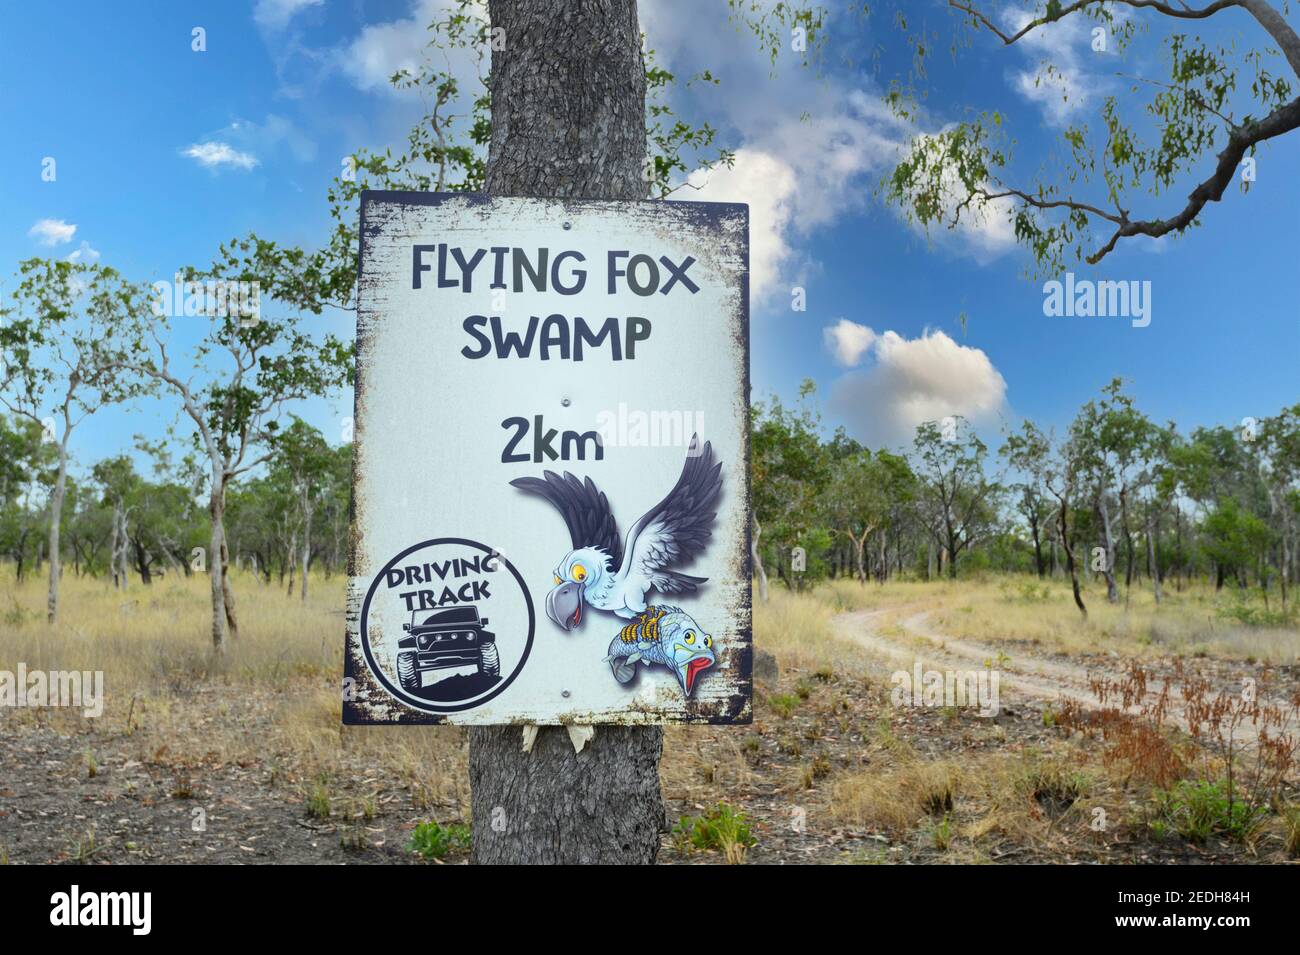 Panneau de direction pour Flying Fox Swamp sur une piste de terre reculée, Lorella Springs Wilderness Park, près de Borroloola, territoire du Nord, territoire du Nord, Australie Banque D'Images